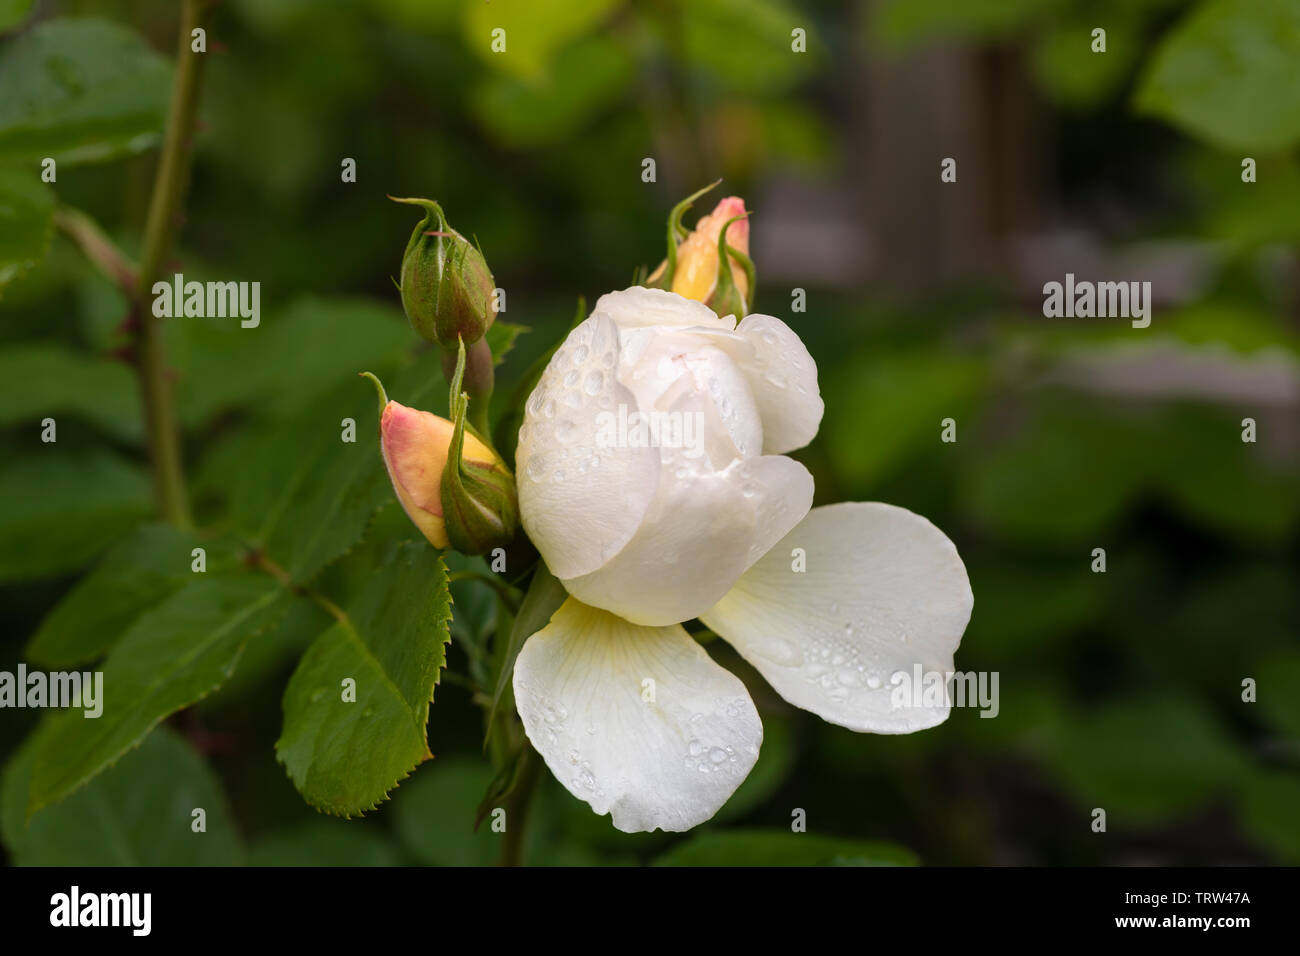 Close up of David Austin rose Imogen flowering in an English garden, UK Stock Photo